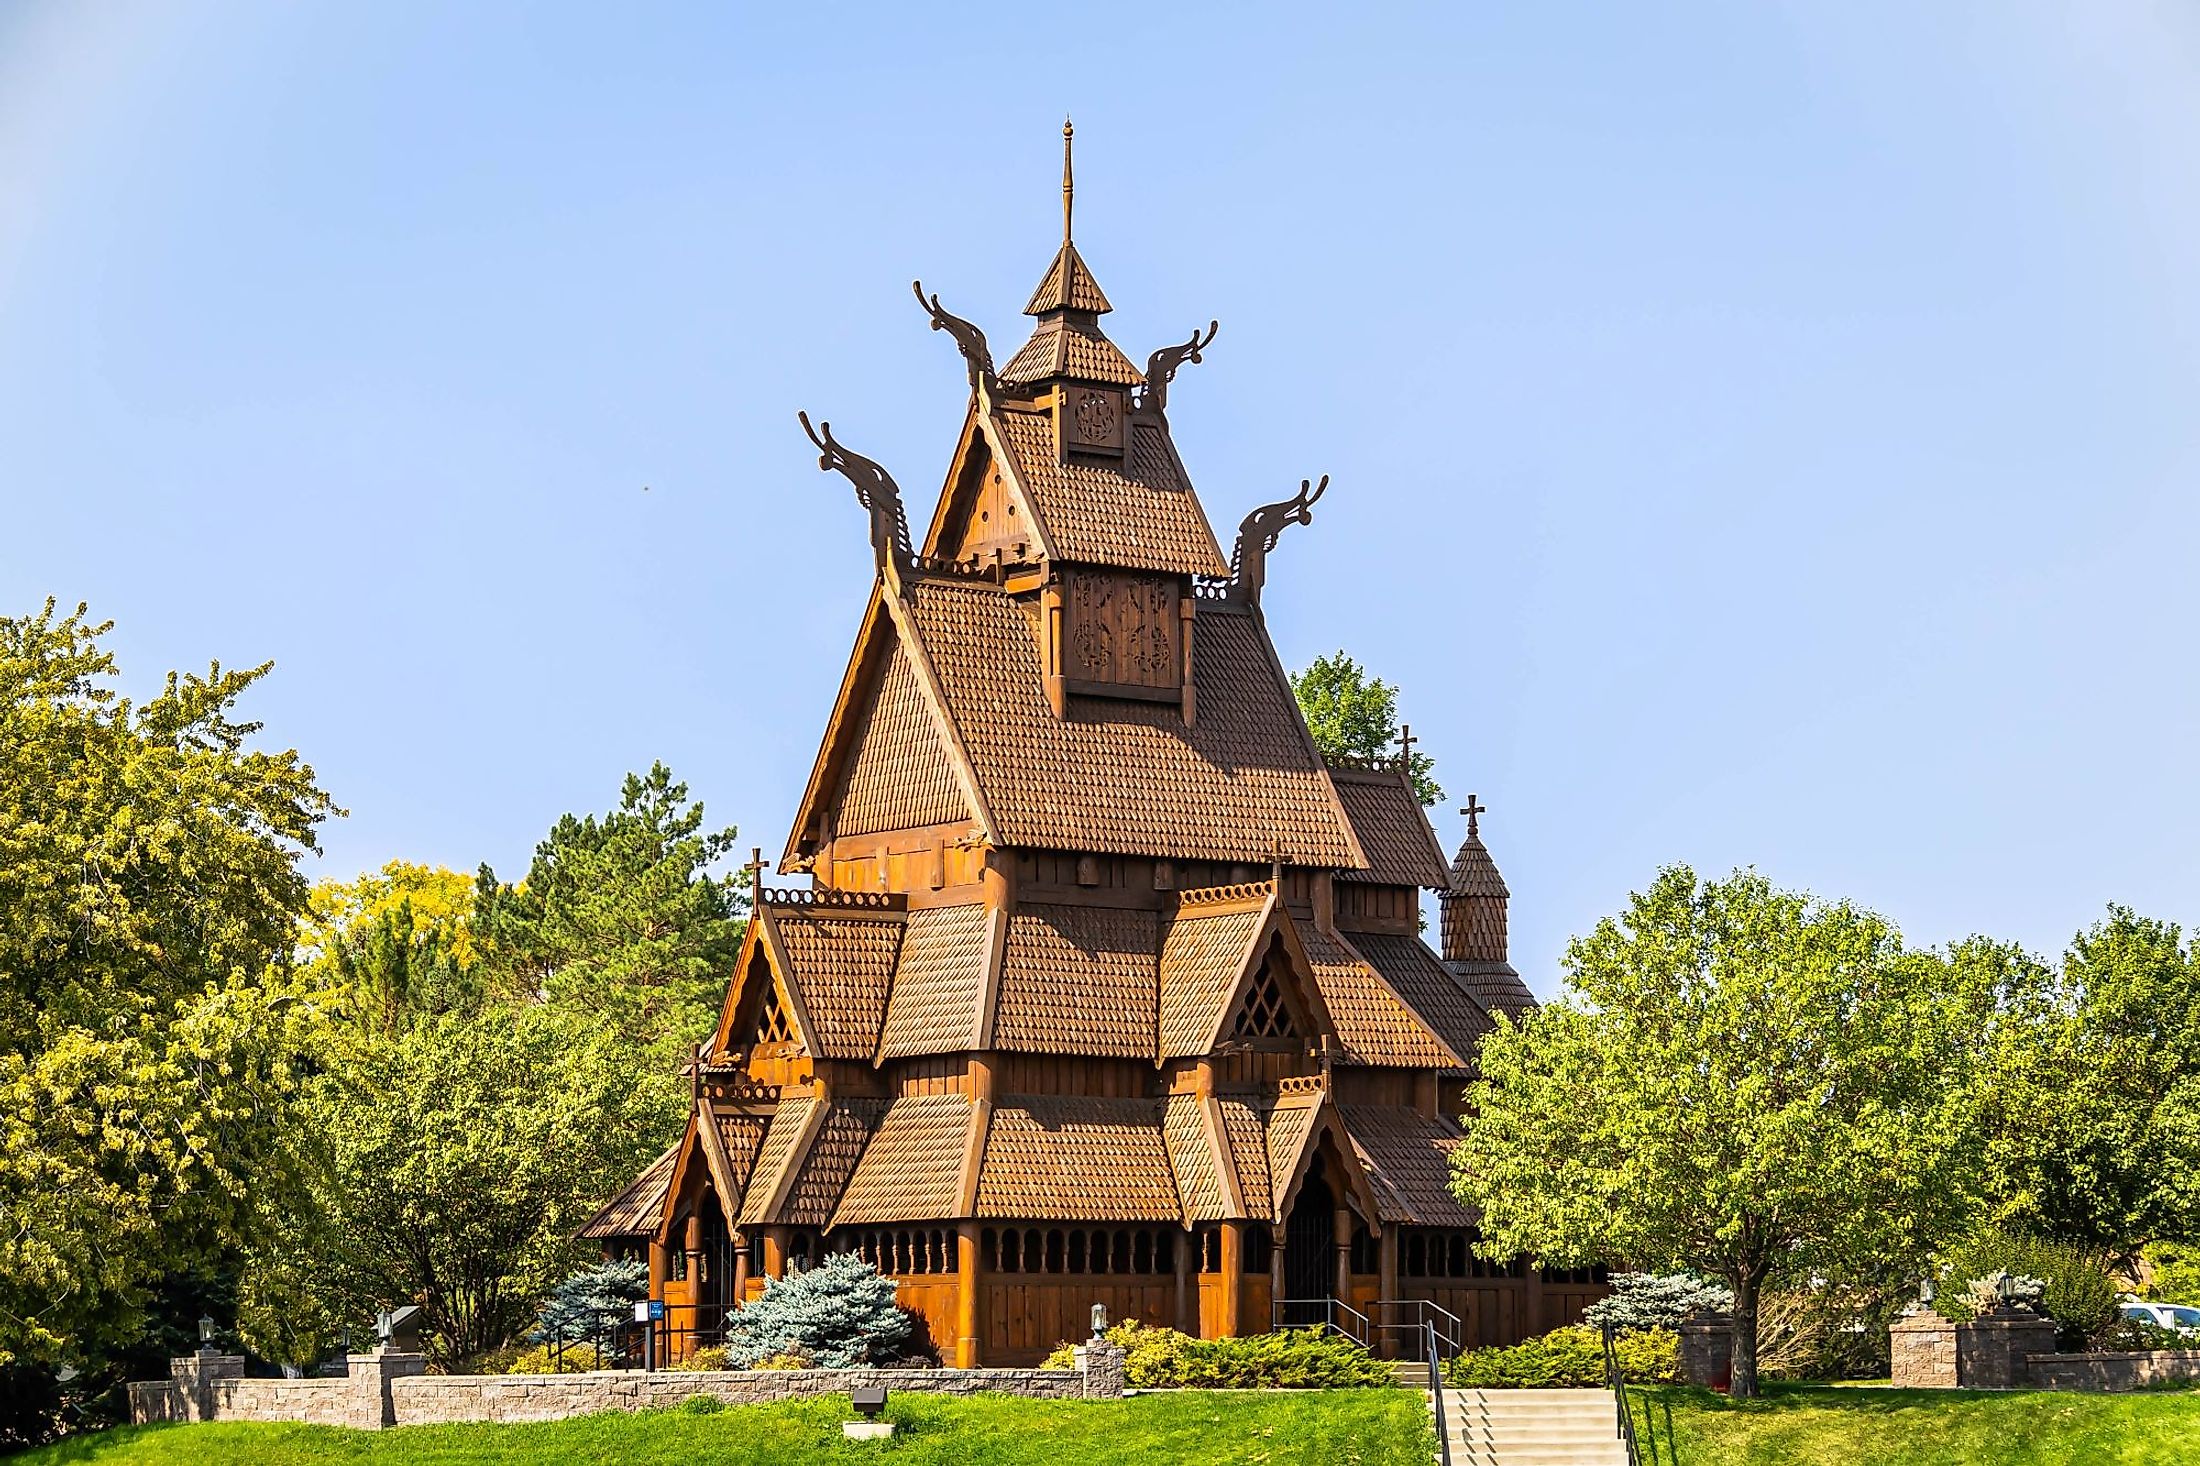 Stave Church of Norwegian design found in Minot, North Dakota. 